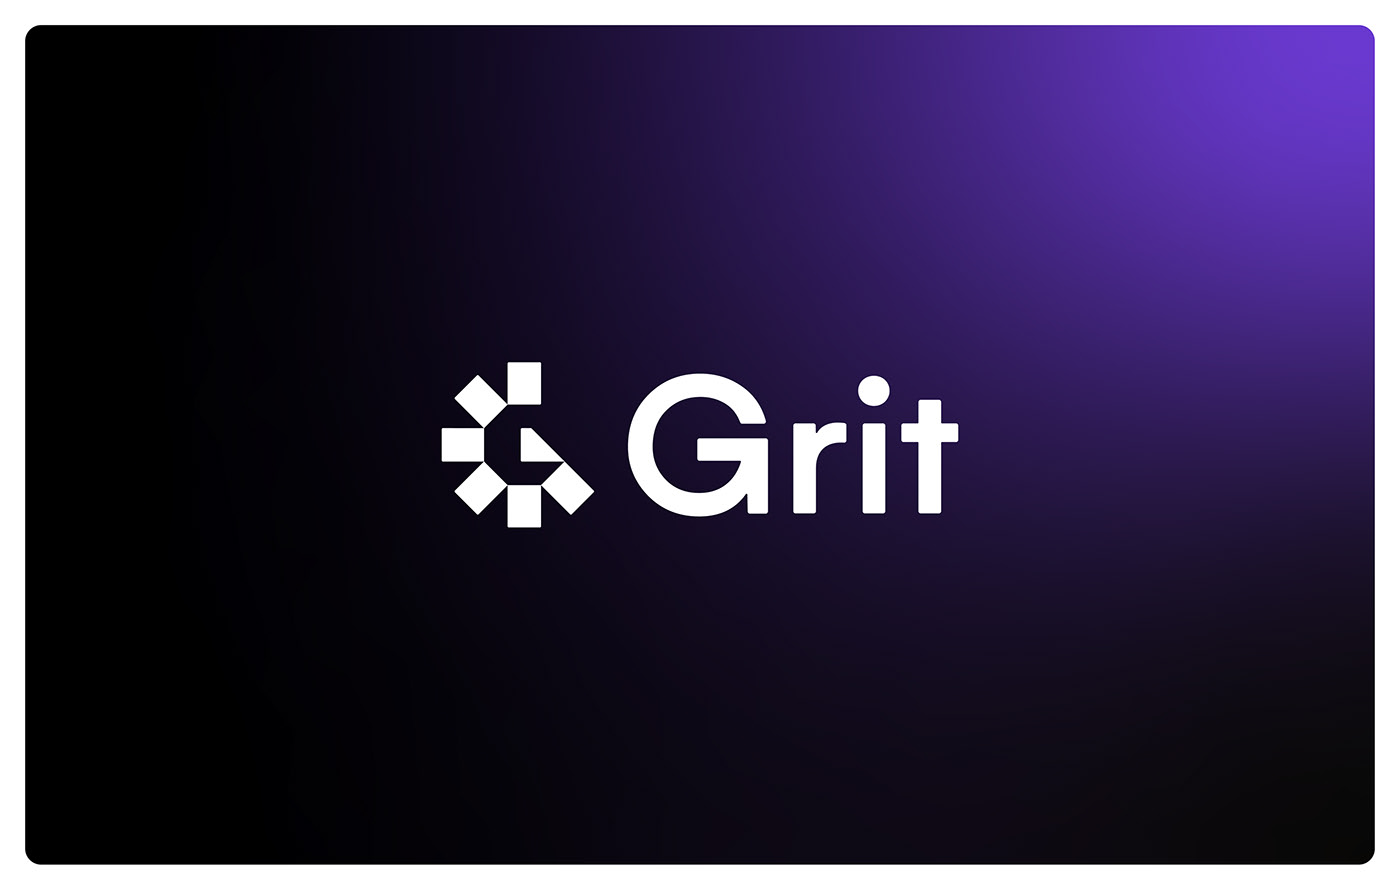 brand branding  brand identity Logo Design graphic design  design Logotype visual identity Mobile app grit